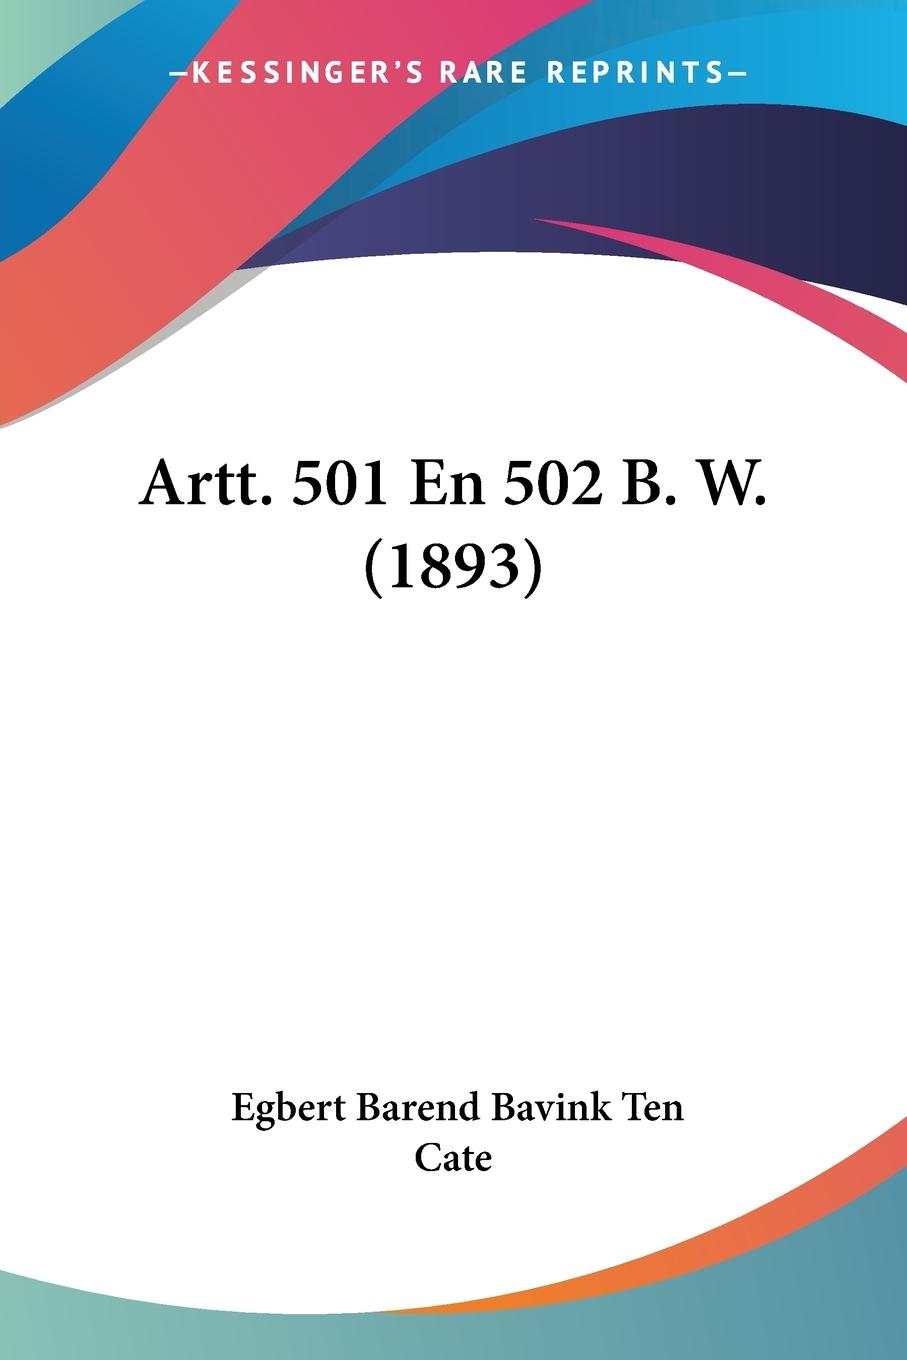 Artt. 501 En 502 B. W. (1893) - Ten Cate, Egbert Barend Bavink